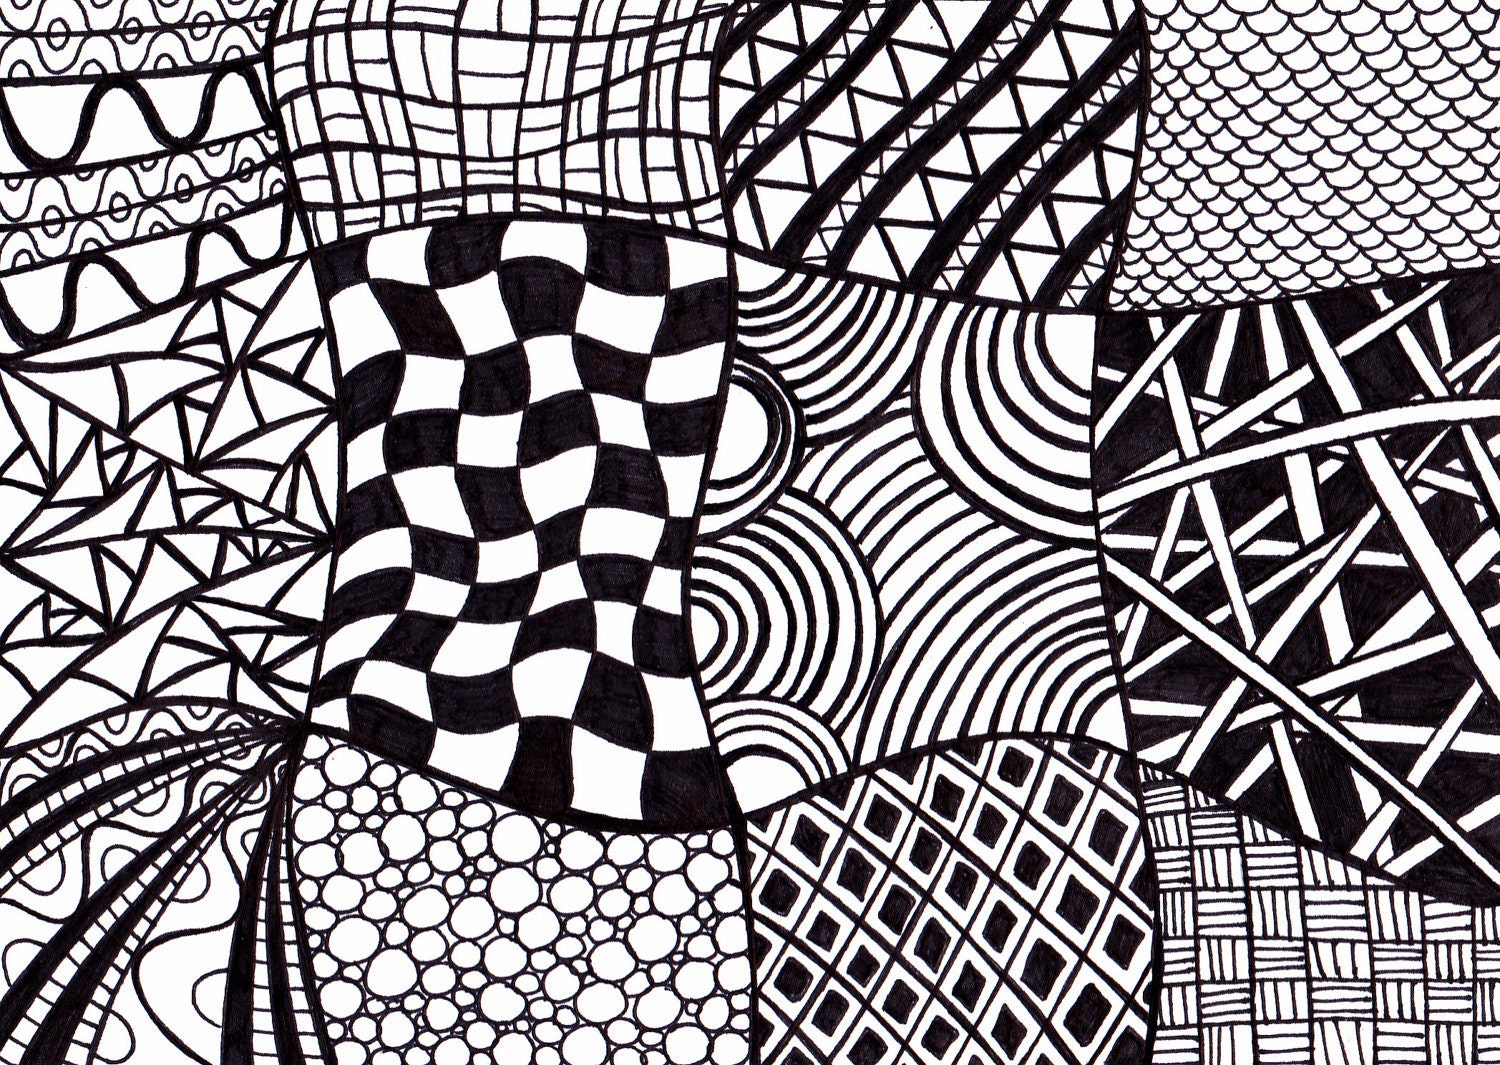 Zen-inspired black and white zentangle art